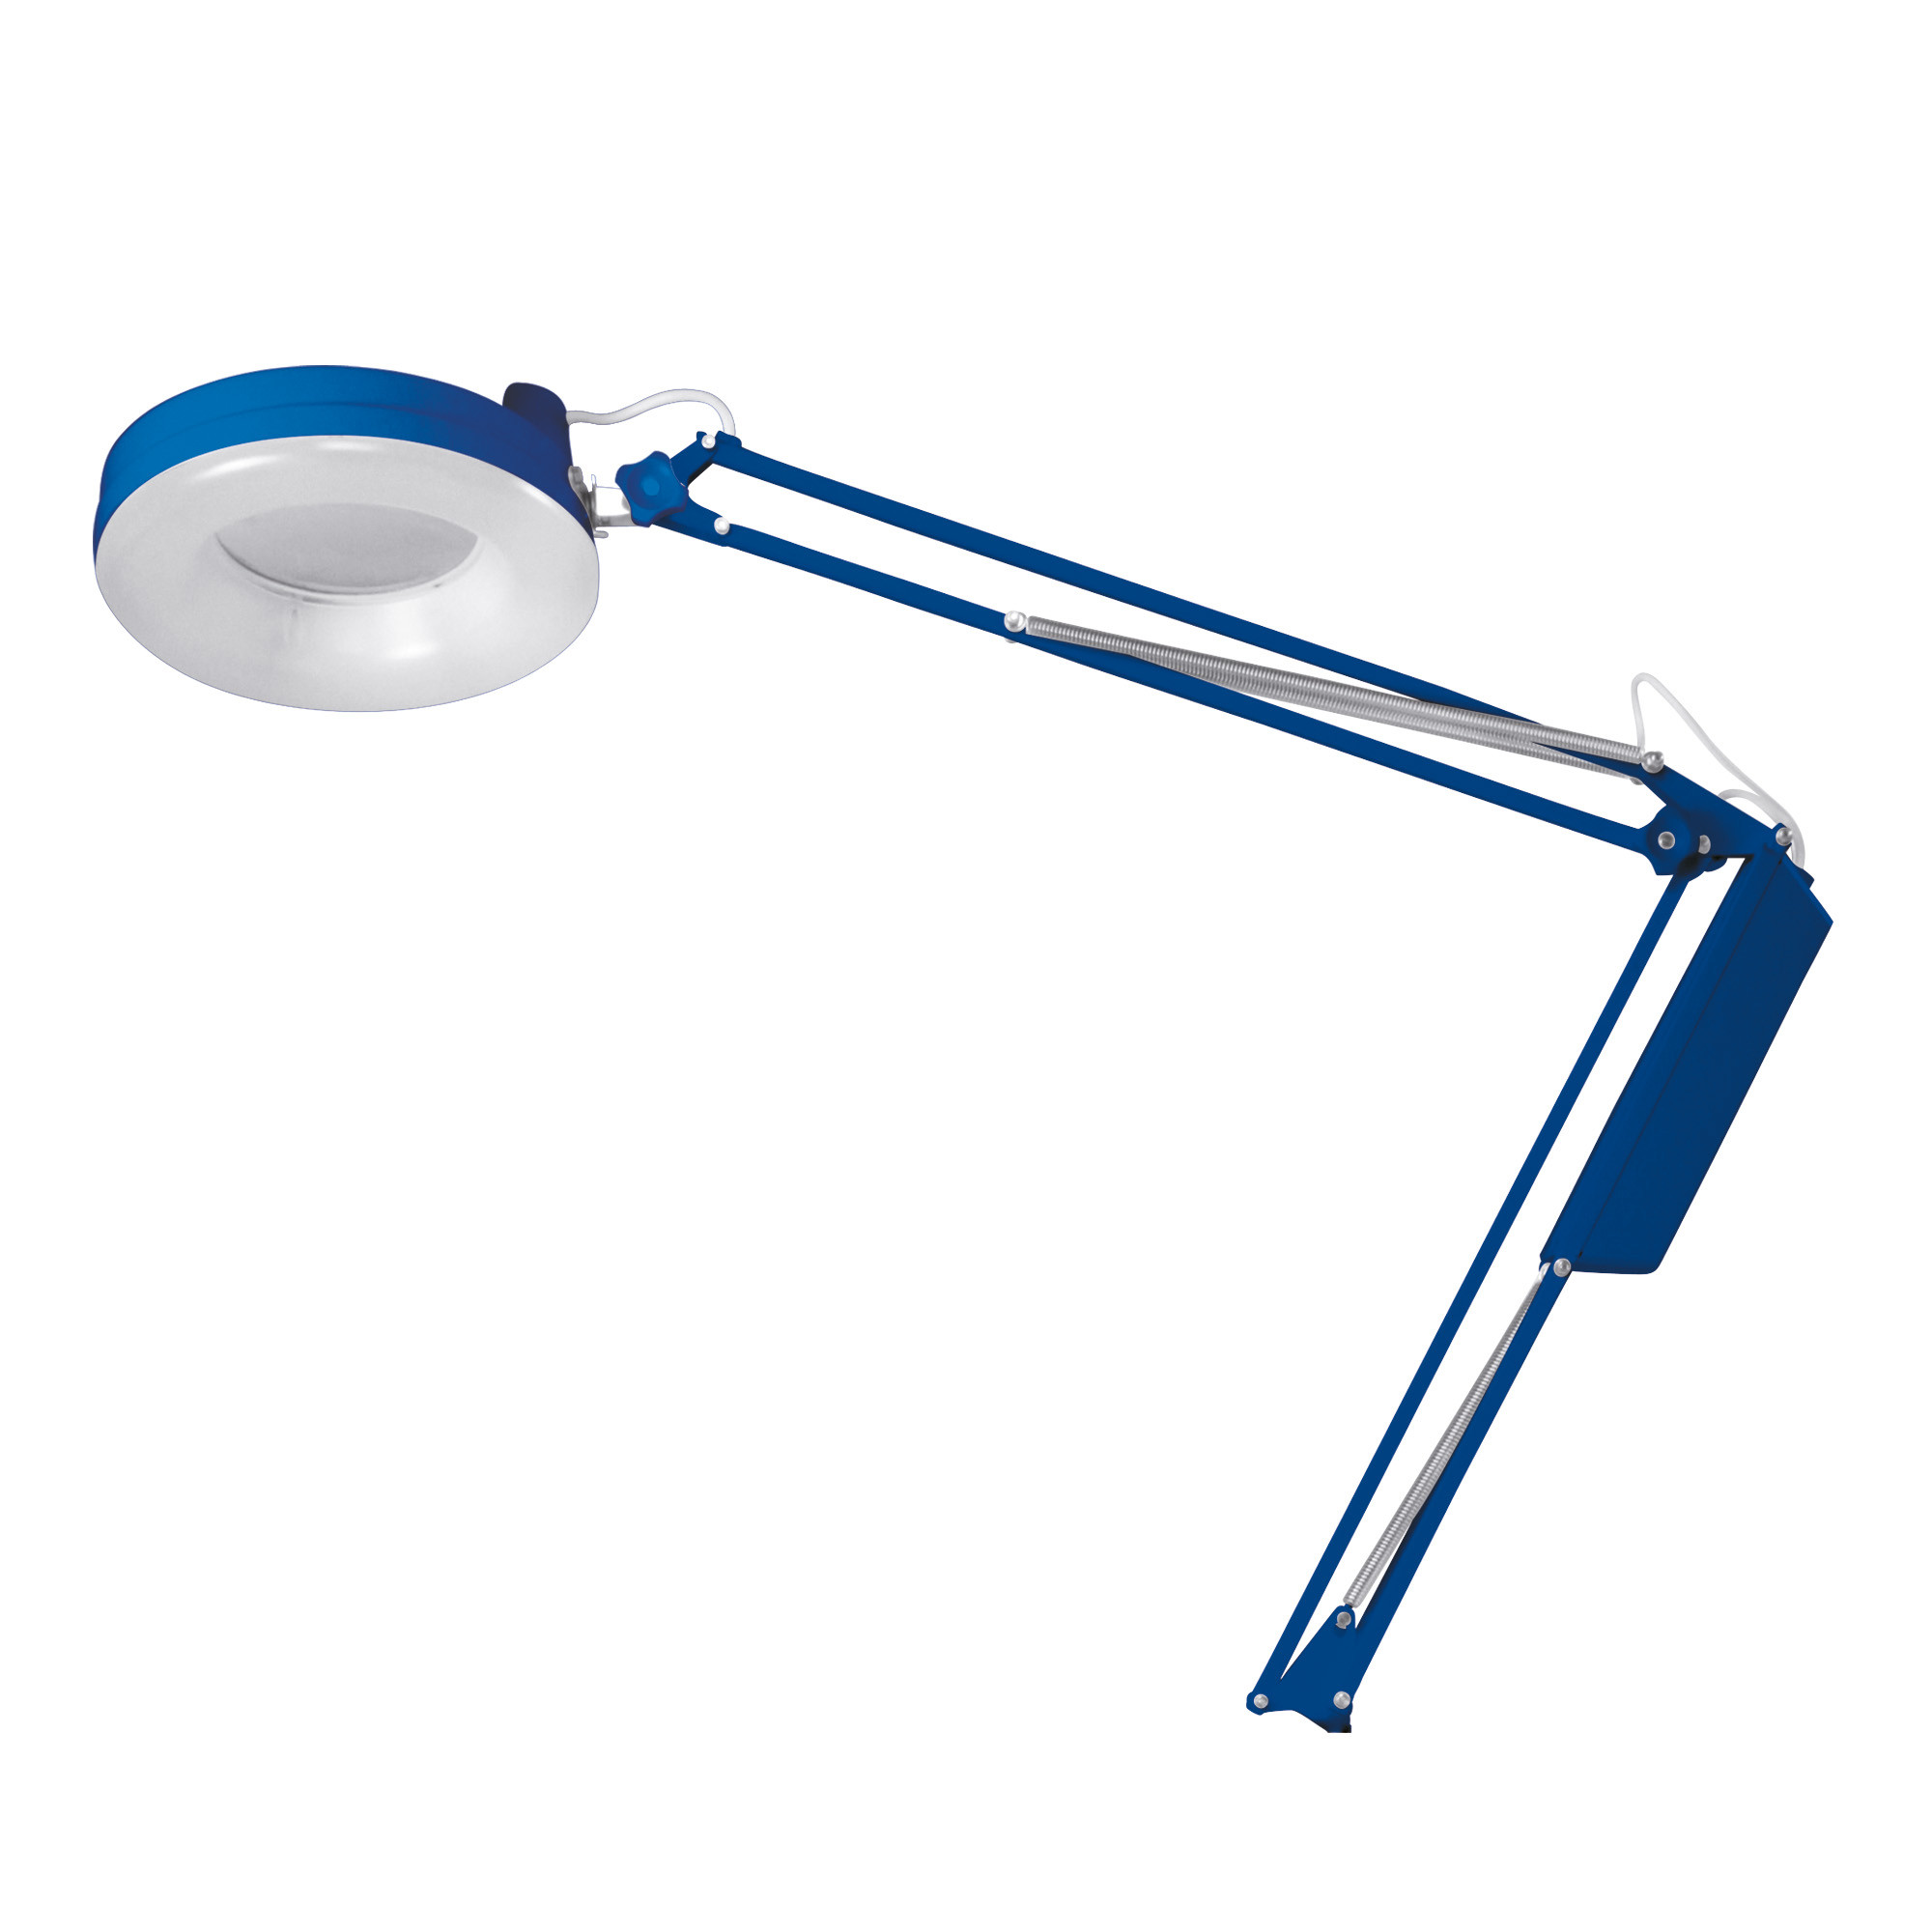 Afma-Lampe mit Neonlicht und blauer 3-Diopter-Lupe